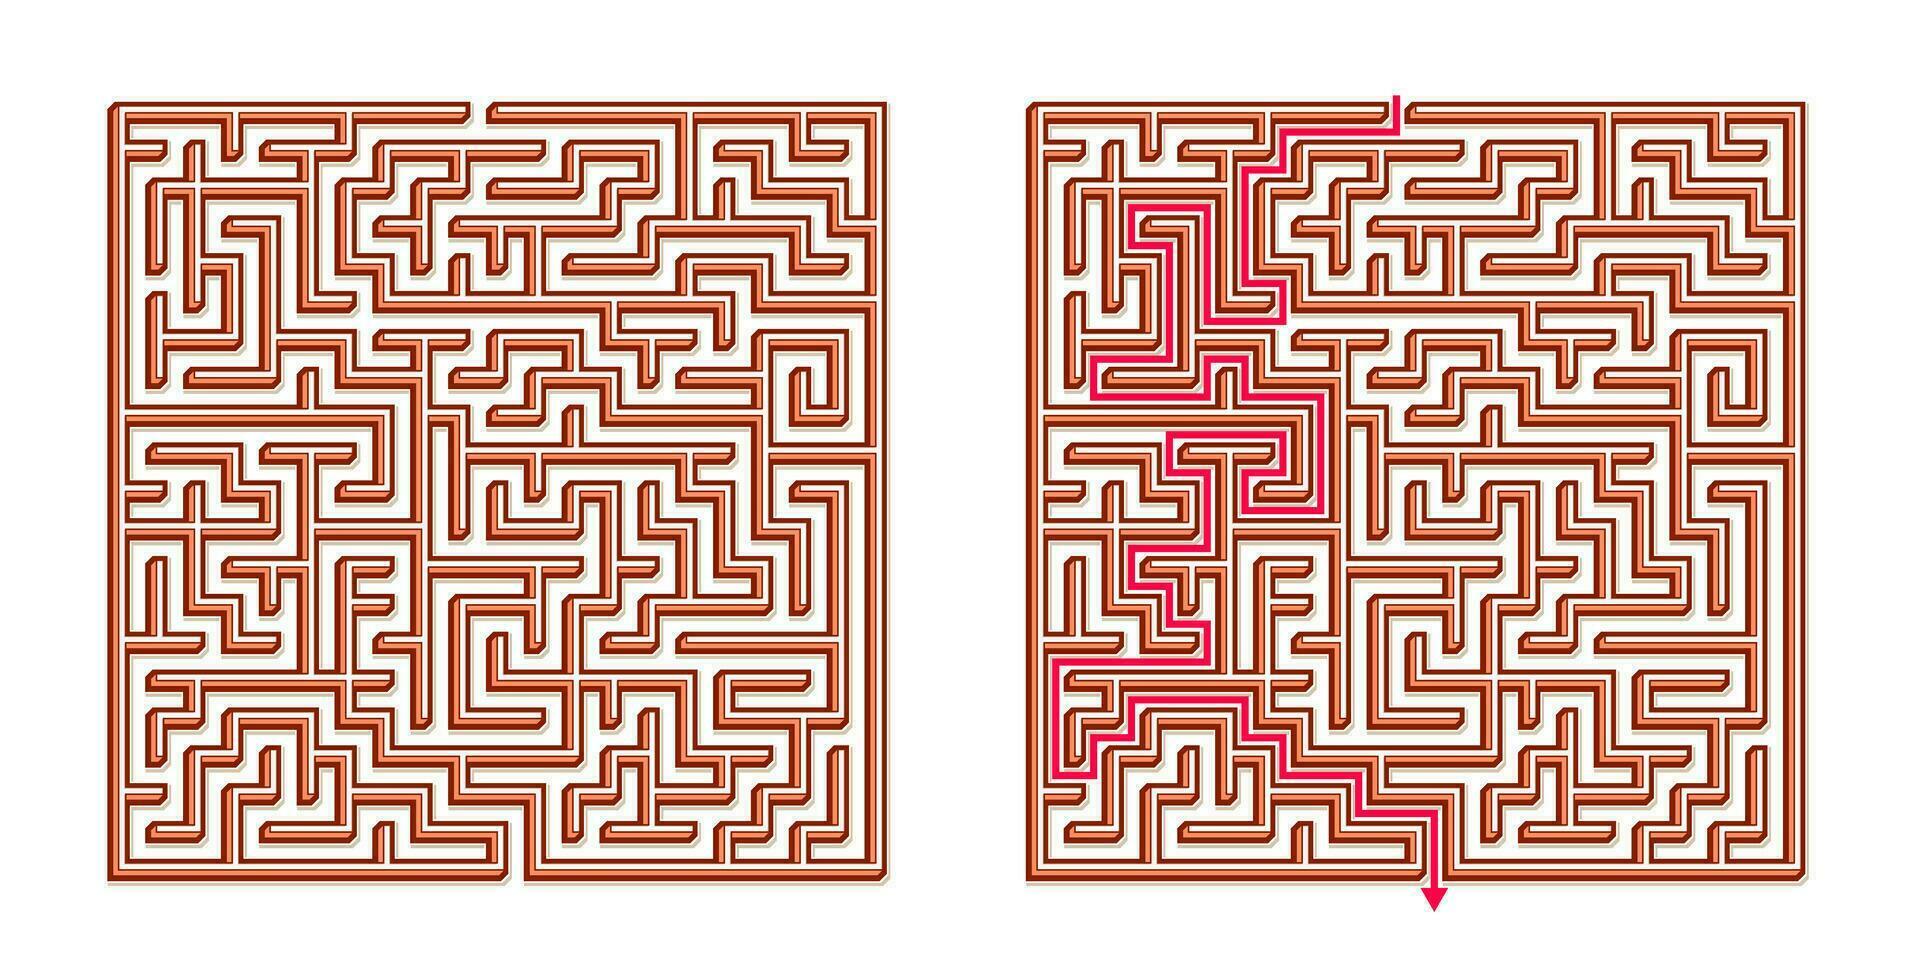 Vektor 3d isometrisch einfach Platz Matze - - Labyrinth mit inbegriffen Lösung. komisch lehrreich Verstand Spiel zum Koordinierung, Probleme lösen, Entscheidung Herstellung Kompetenzen prüfen.